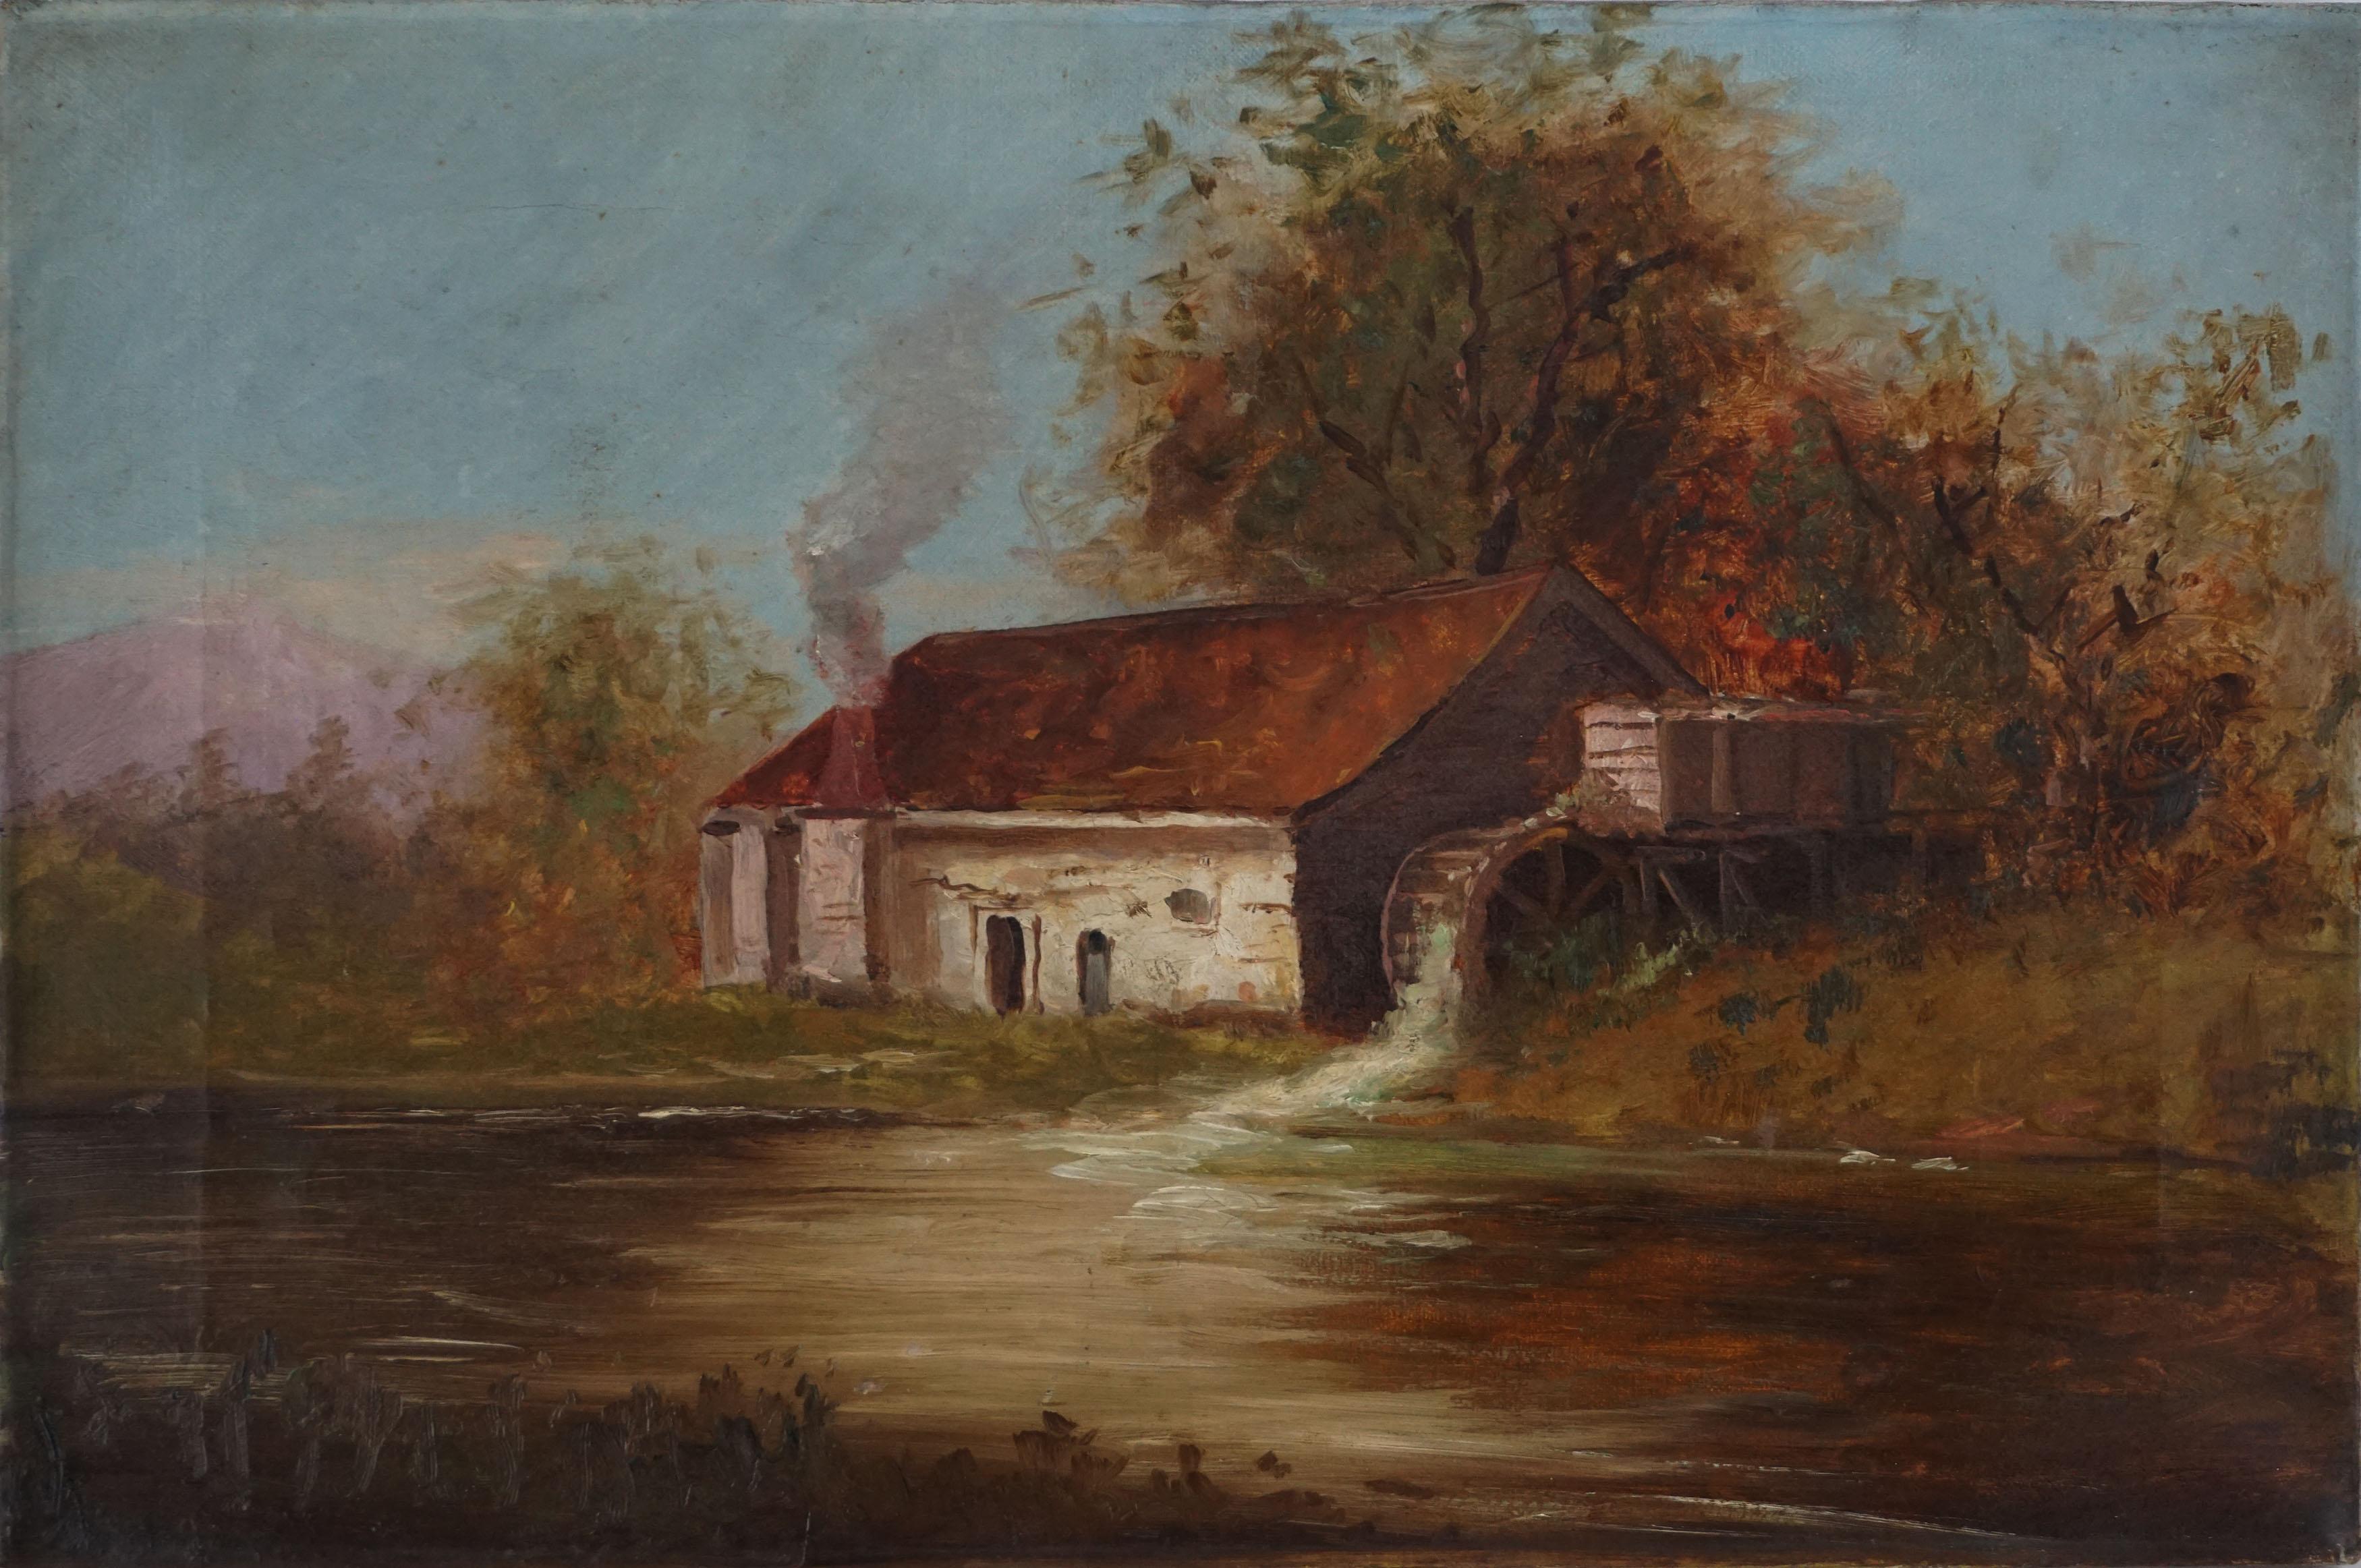 Unknown Landscape Painting – Originale Herbstlandschaft des frühen 20. Jahrhunderts – Die alte Adobe-Wassermühle